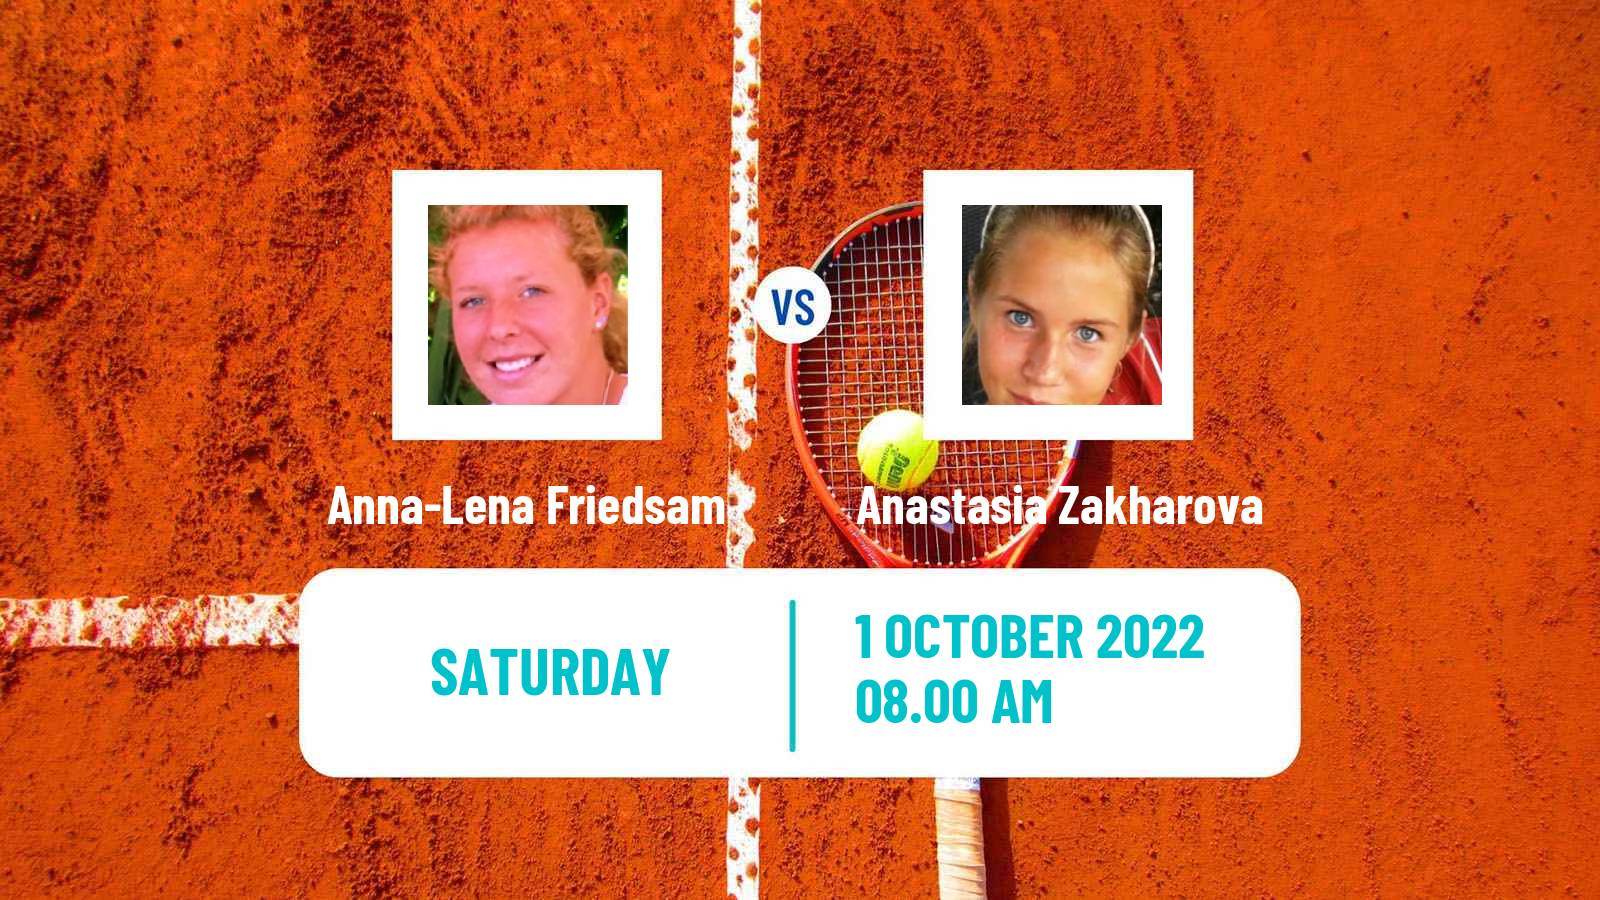 Tennis WTA Ostrava Anna-Lena Friedsam - Anastasia Zakharova